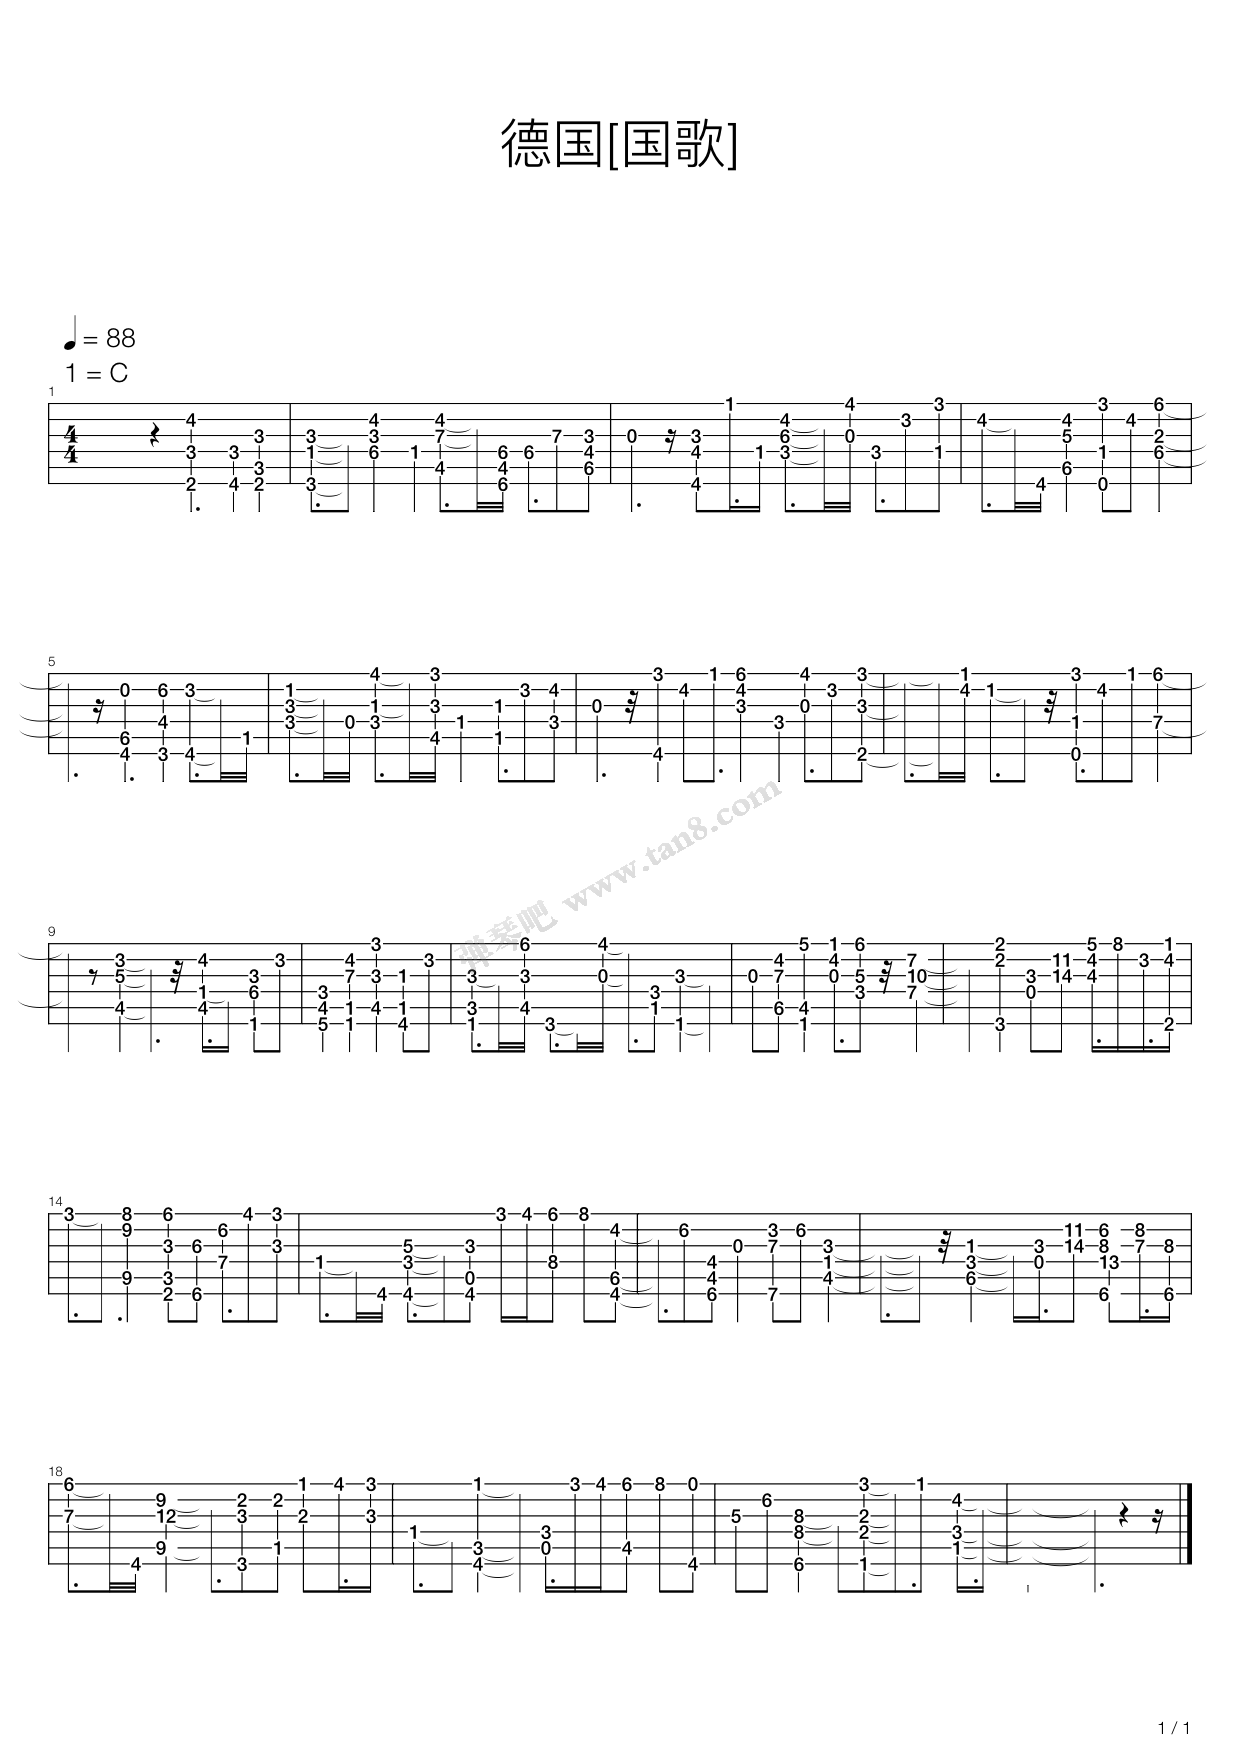 德国民歌【Vogelhochzeit 小鸟的婚礼钢琴谱】_在线免费打印下载-爱弹琴乐谱网